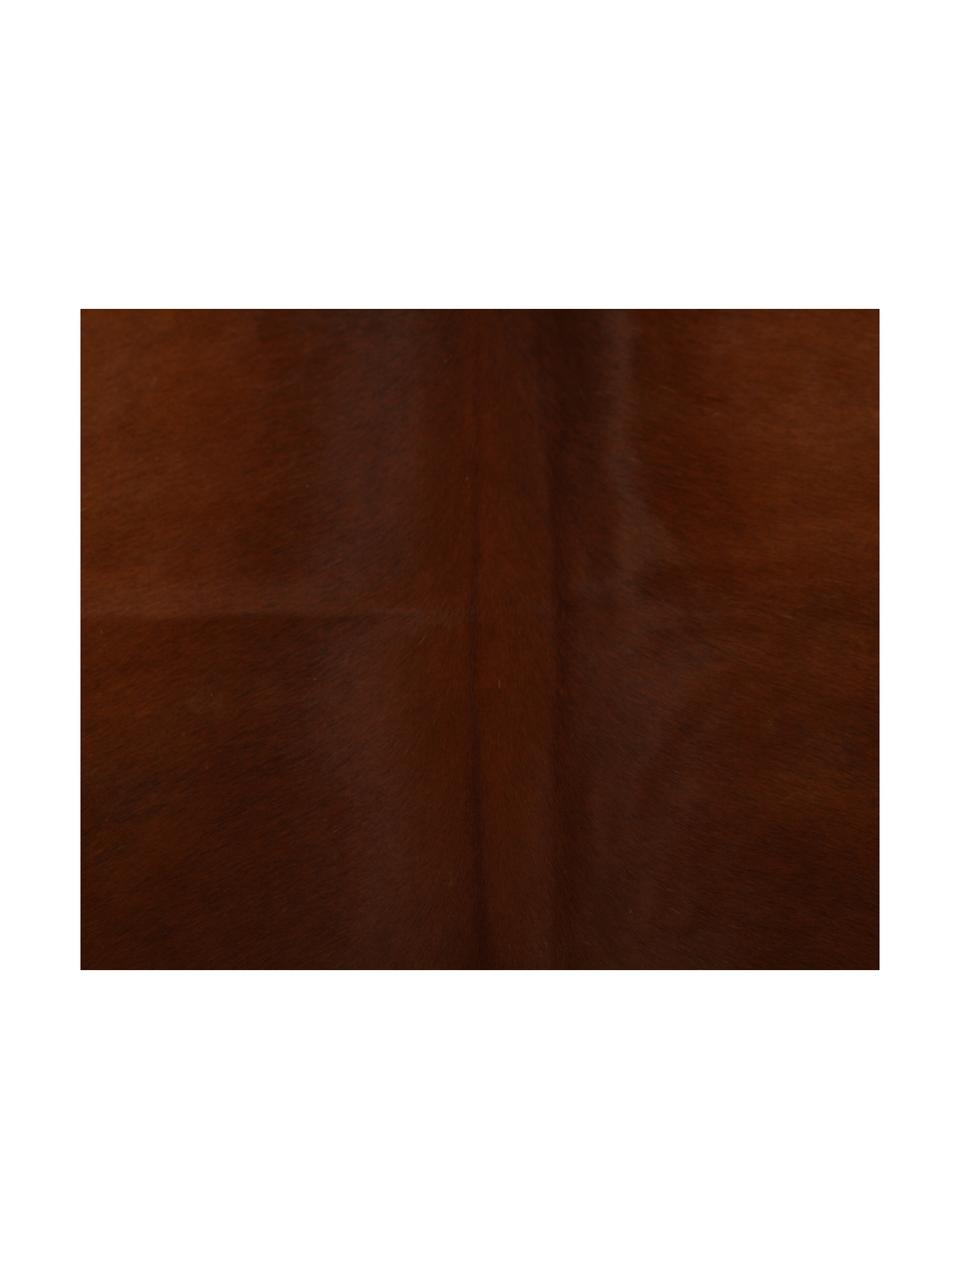 Dywan ze skóry bydlęcej Jura, Skóra bydlęca, Brązowy, beżowy, Unikatowa skóra bydlęca 983, 160 x 180 cm